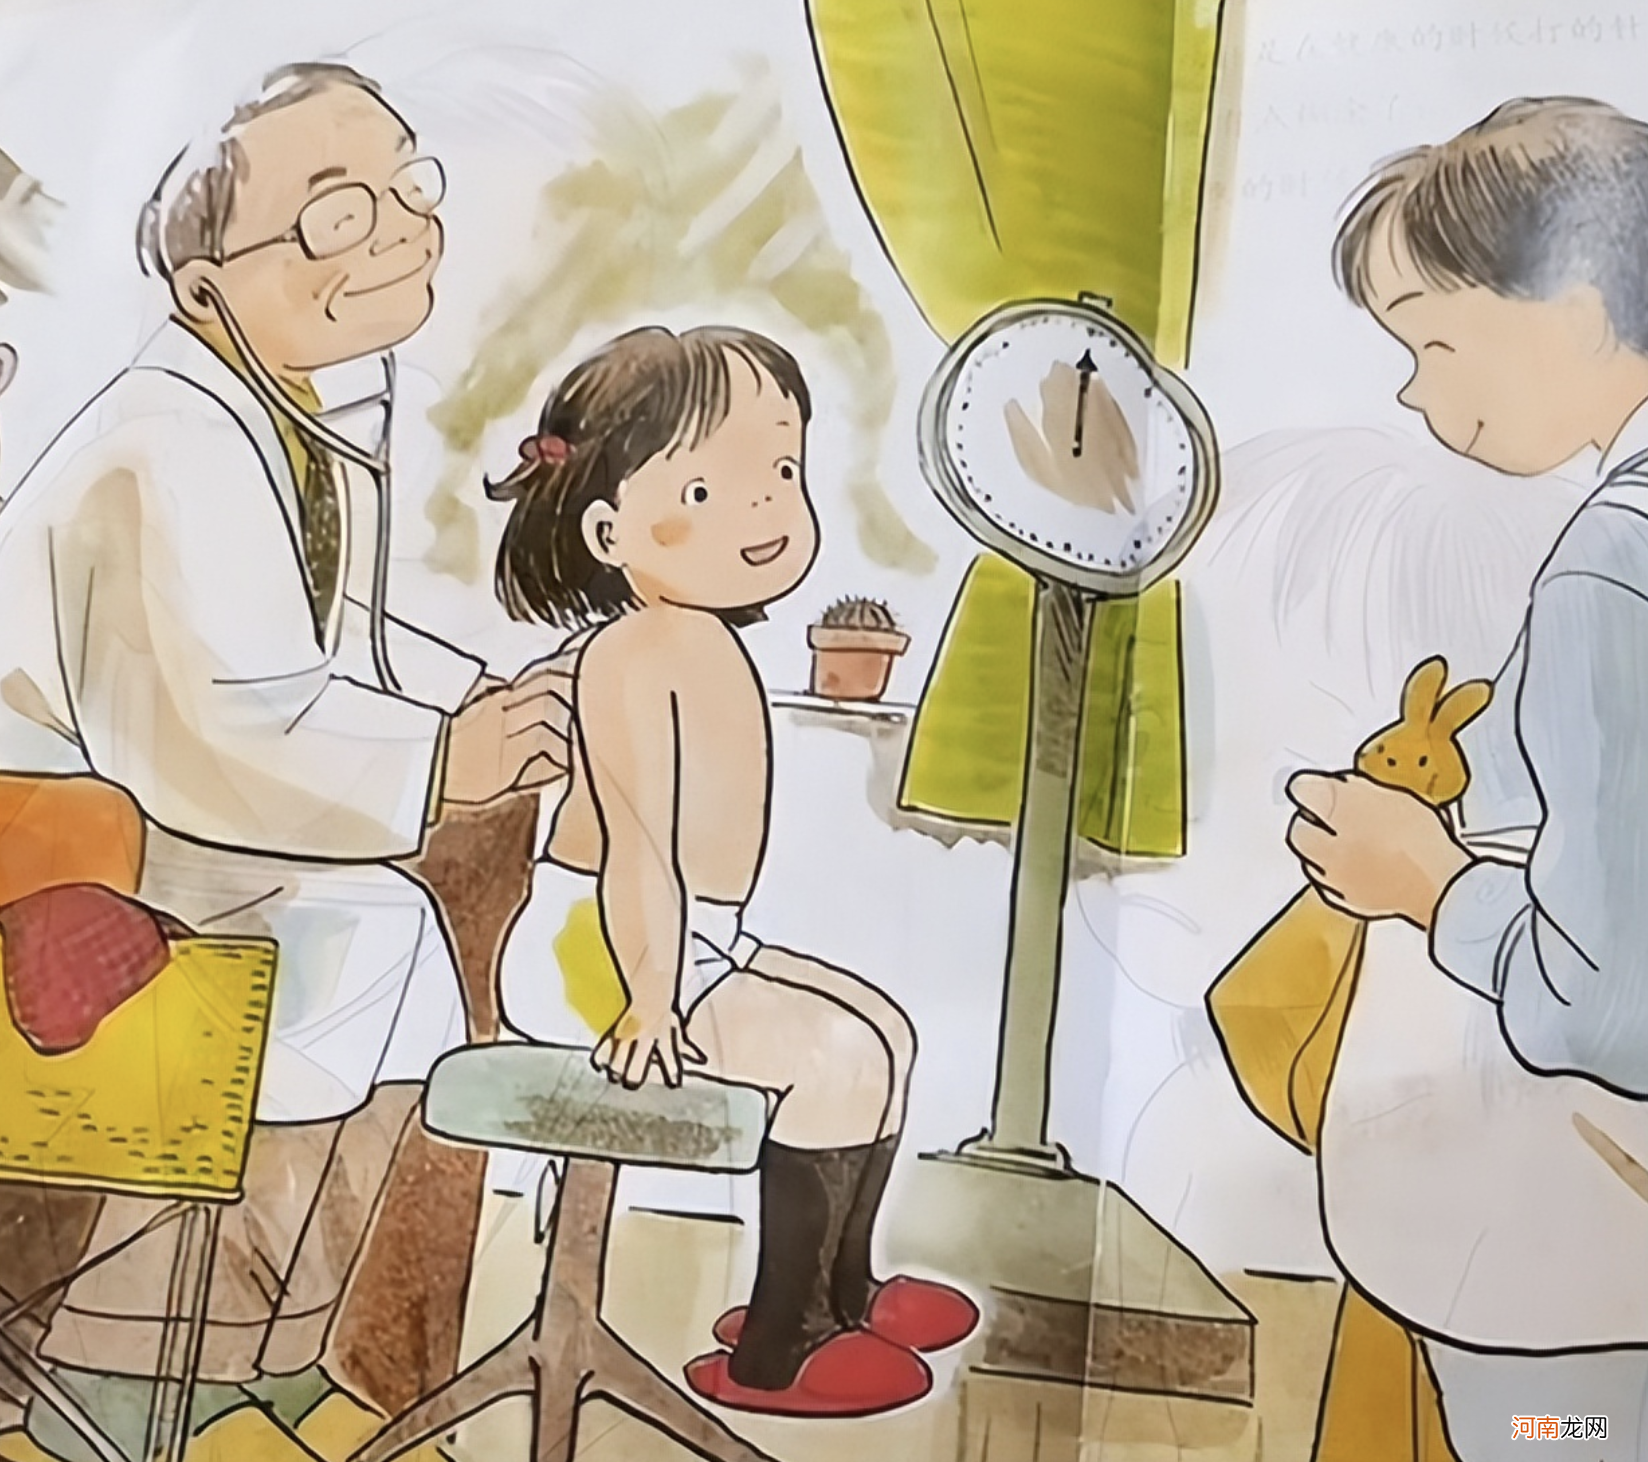 “打针用脱衣服吗”？儿童绘本插图引争议，家长表示不理解